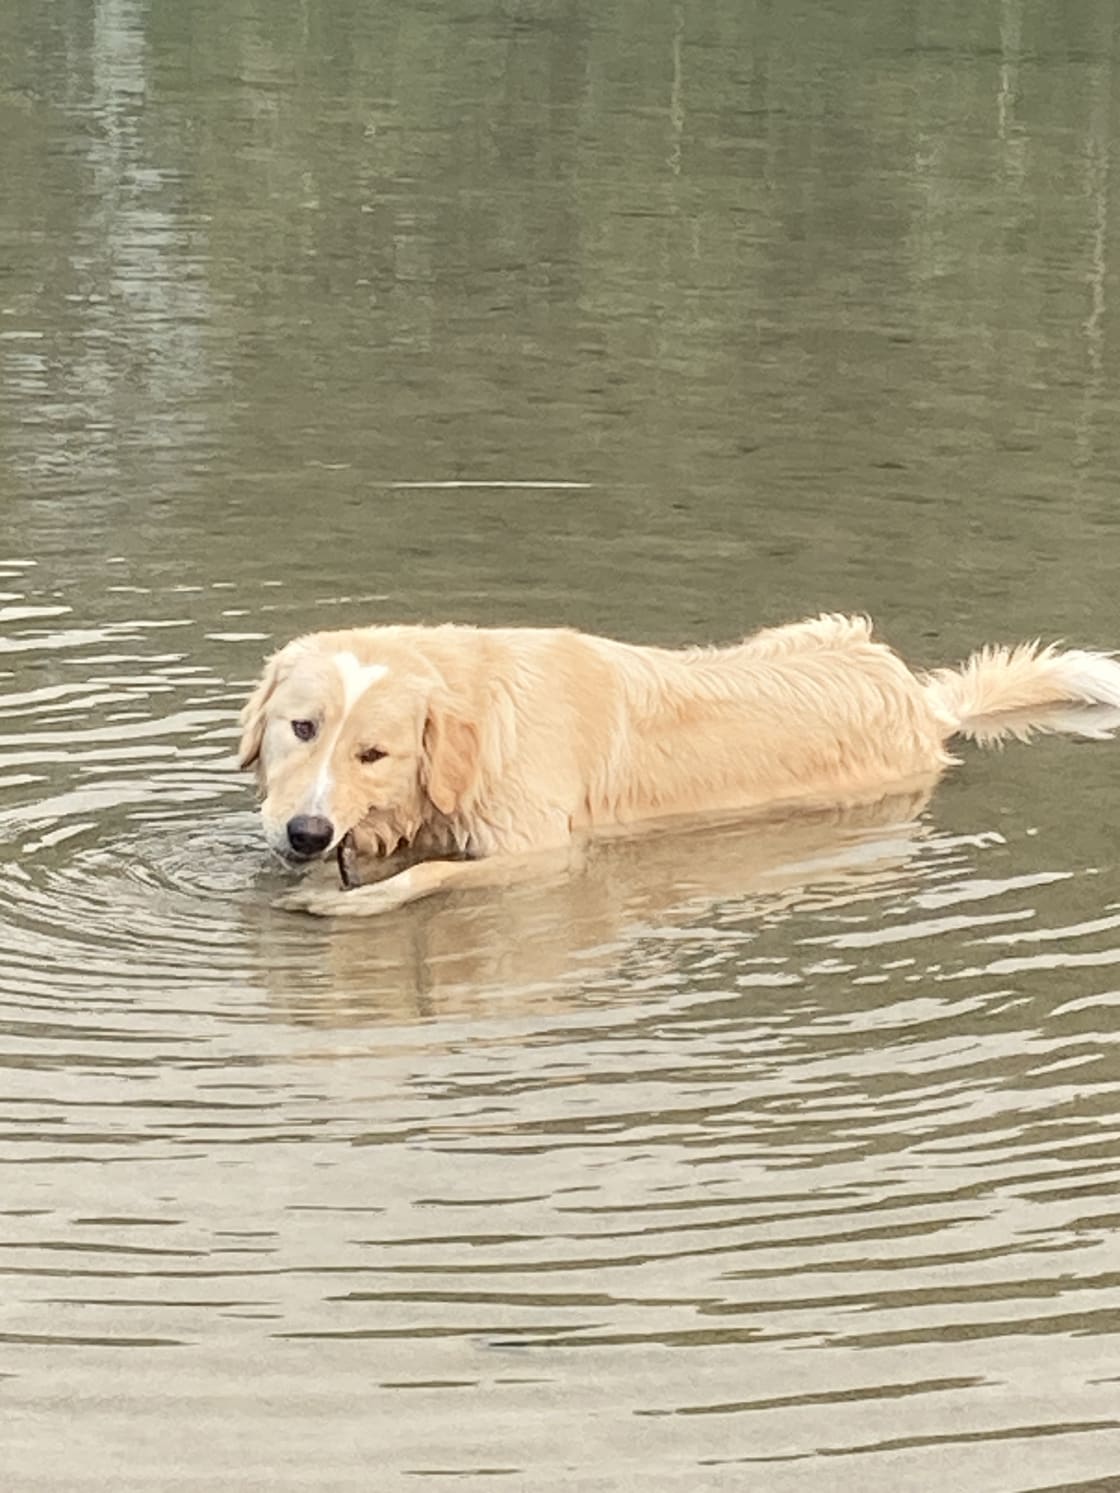 Swimming buddy 